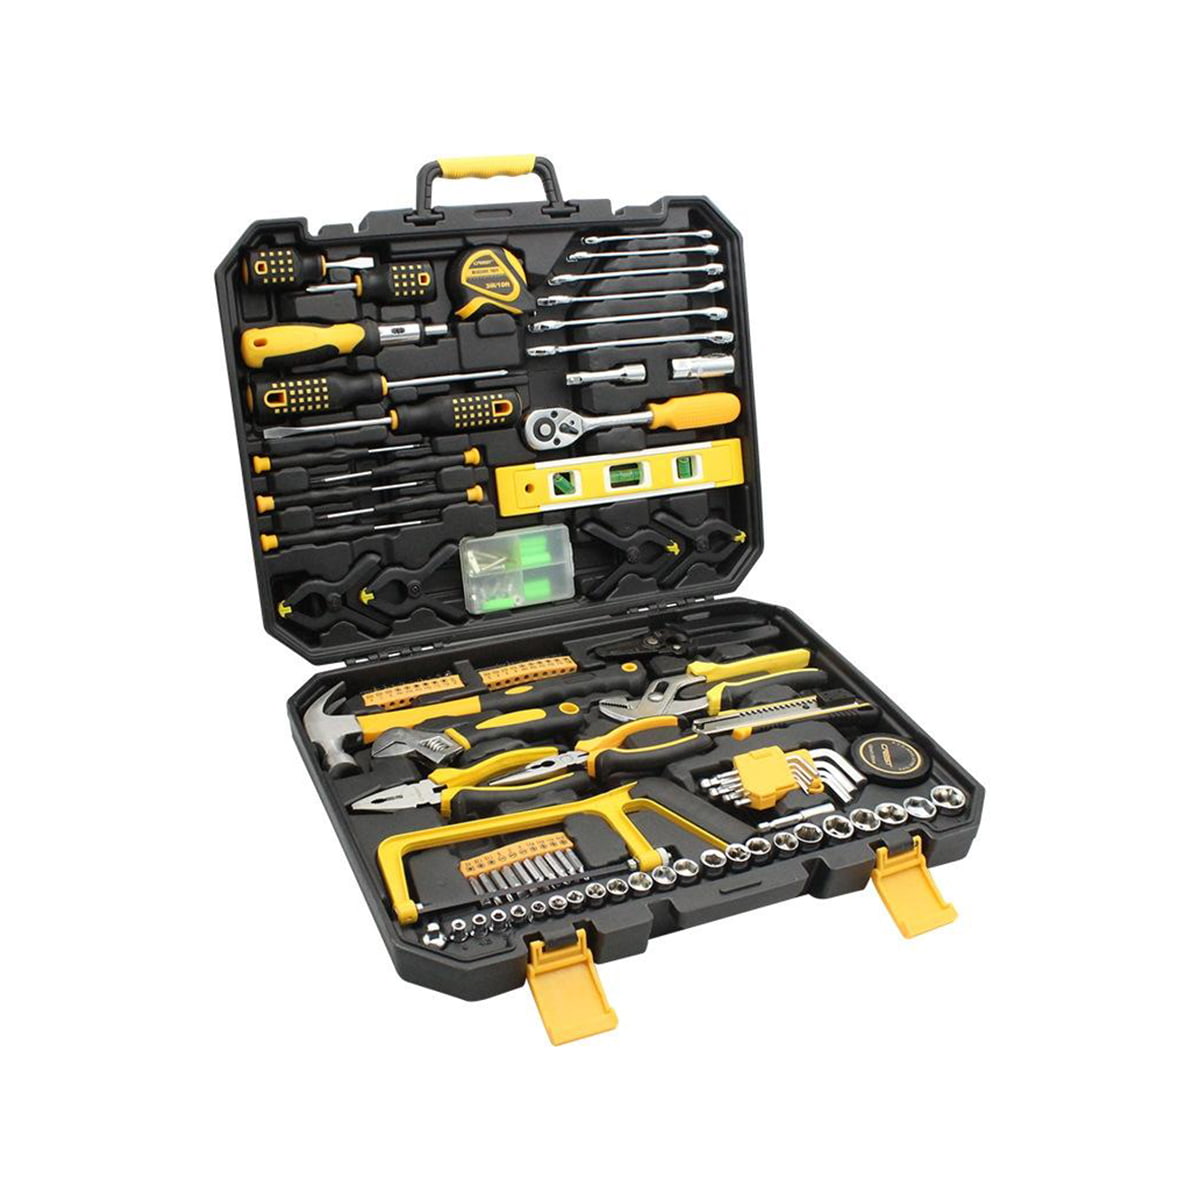 168 stuks Dopsleutel Auto Reparatie Gereedschap Set Combinatie Mixed Hand Tool Kit met Plastic Toolbox Opbergkoffer